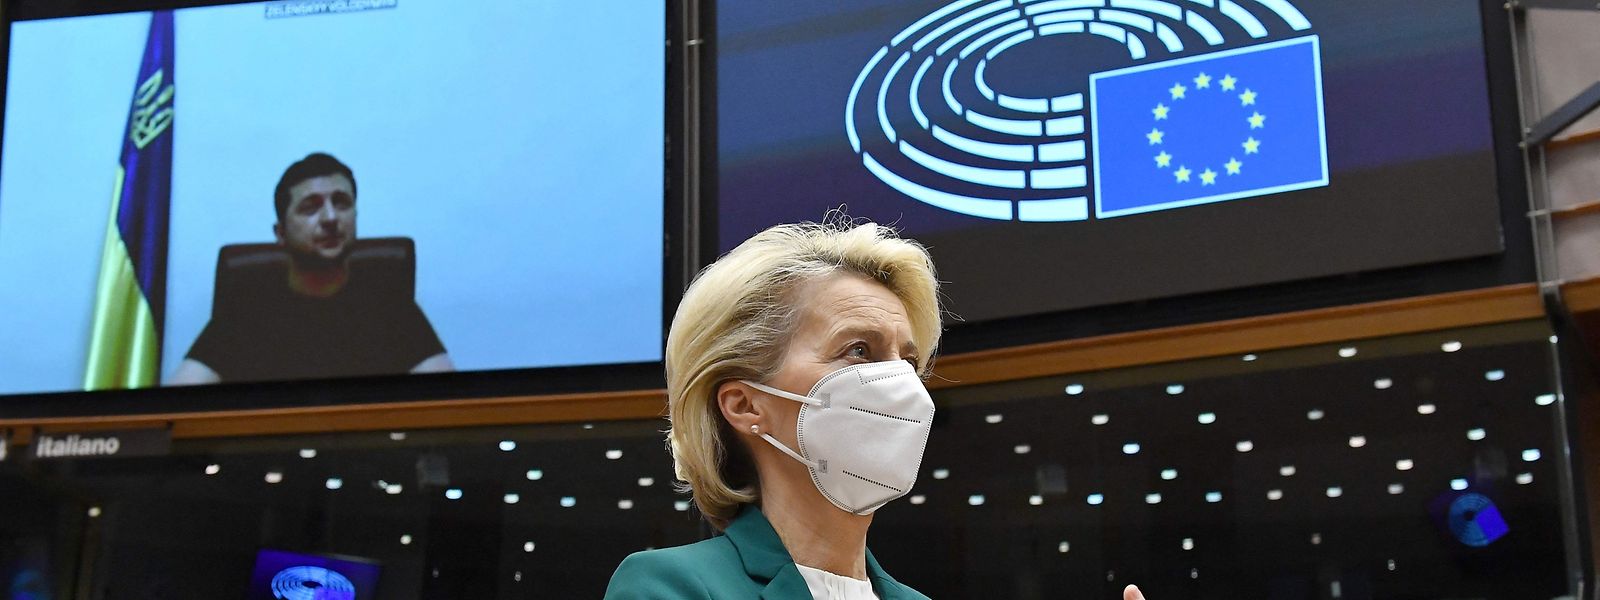 A presidente da Comissão Europeia, Ursula von der Leyen, aplaude o discurso de Volodymyr Zelensky, o presidente ucraniano, que discursou esta terça-feira por videoconferência no Parlamento Europeu.